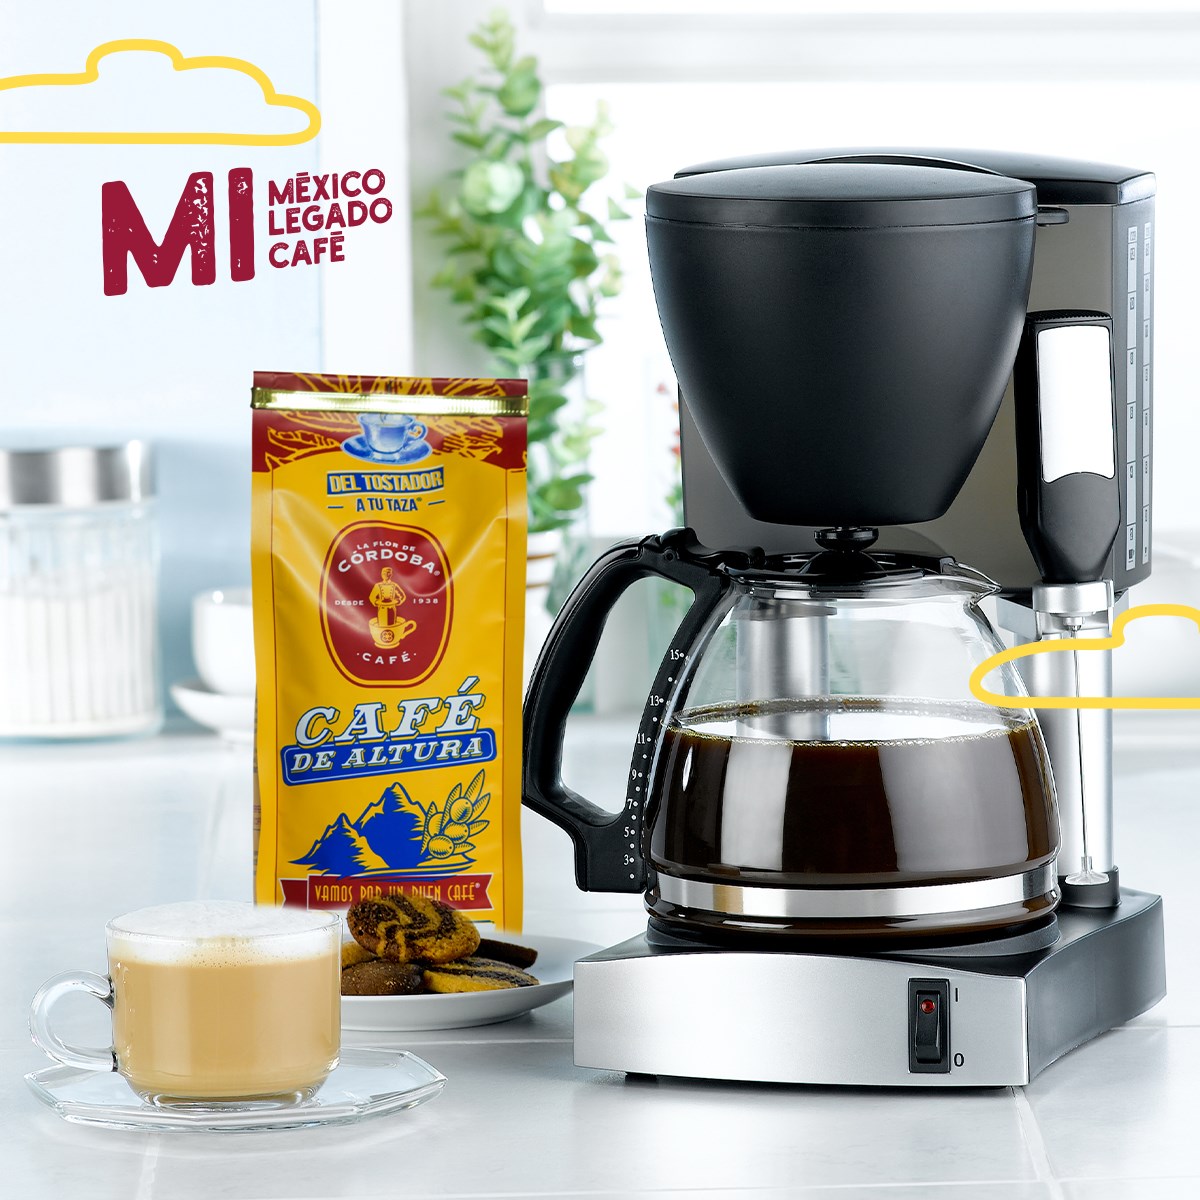 Suscripción Mensual de Café. Recomendable para cafeteras espresso